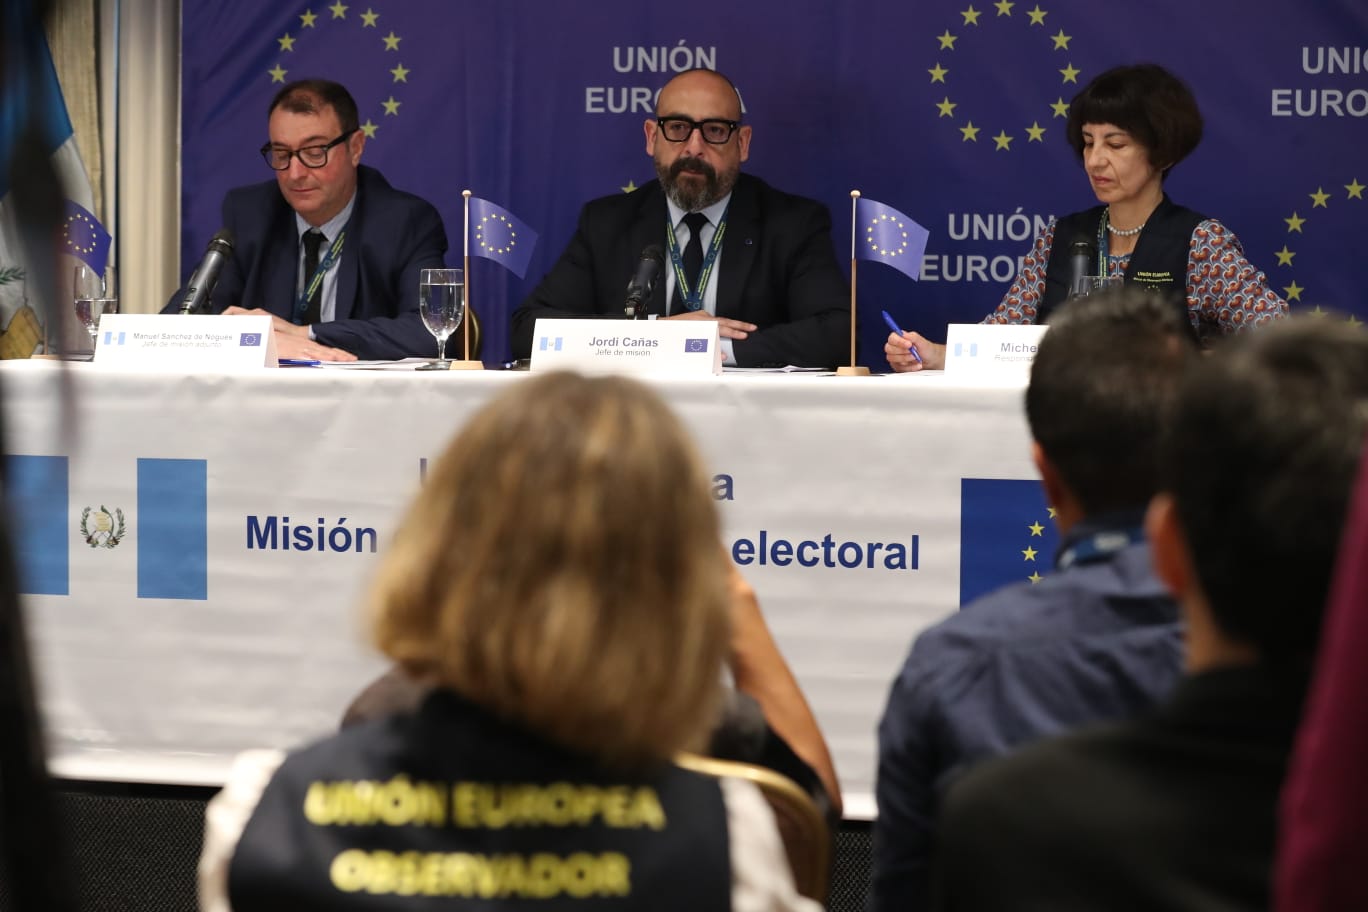 La misión se instala una semana después de que la Unión Europea publicara un comunicado expresando preocupación ante la exclusión de candidatos dentro del proceso. (Foto Prensa Libre: Roberto López).